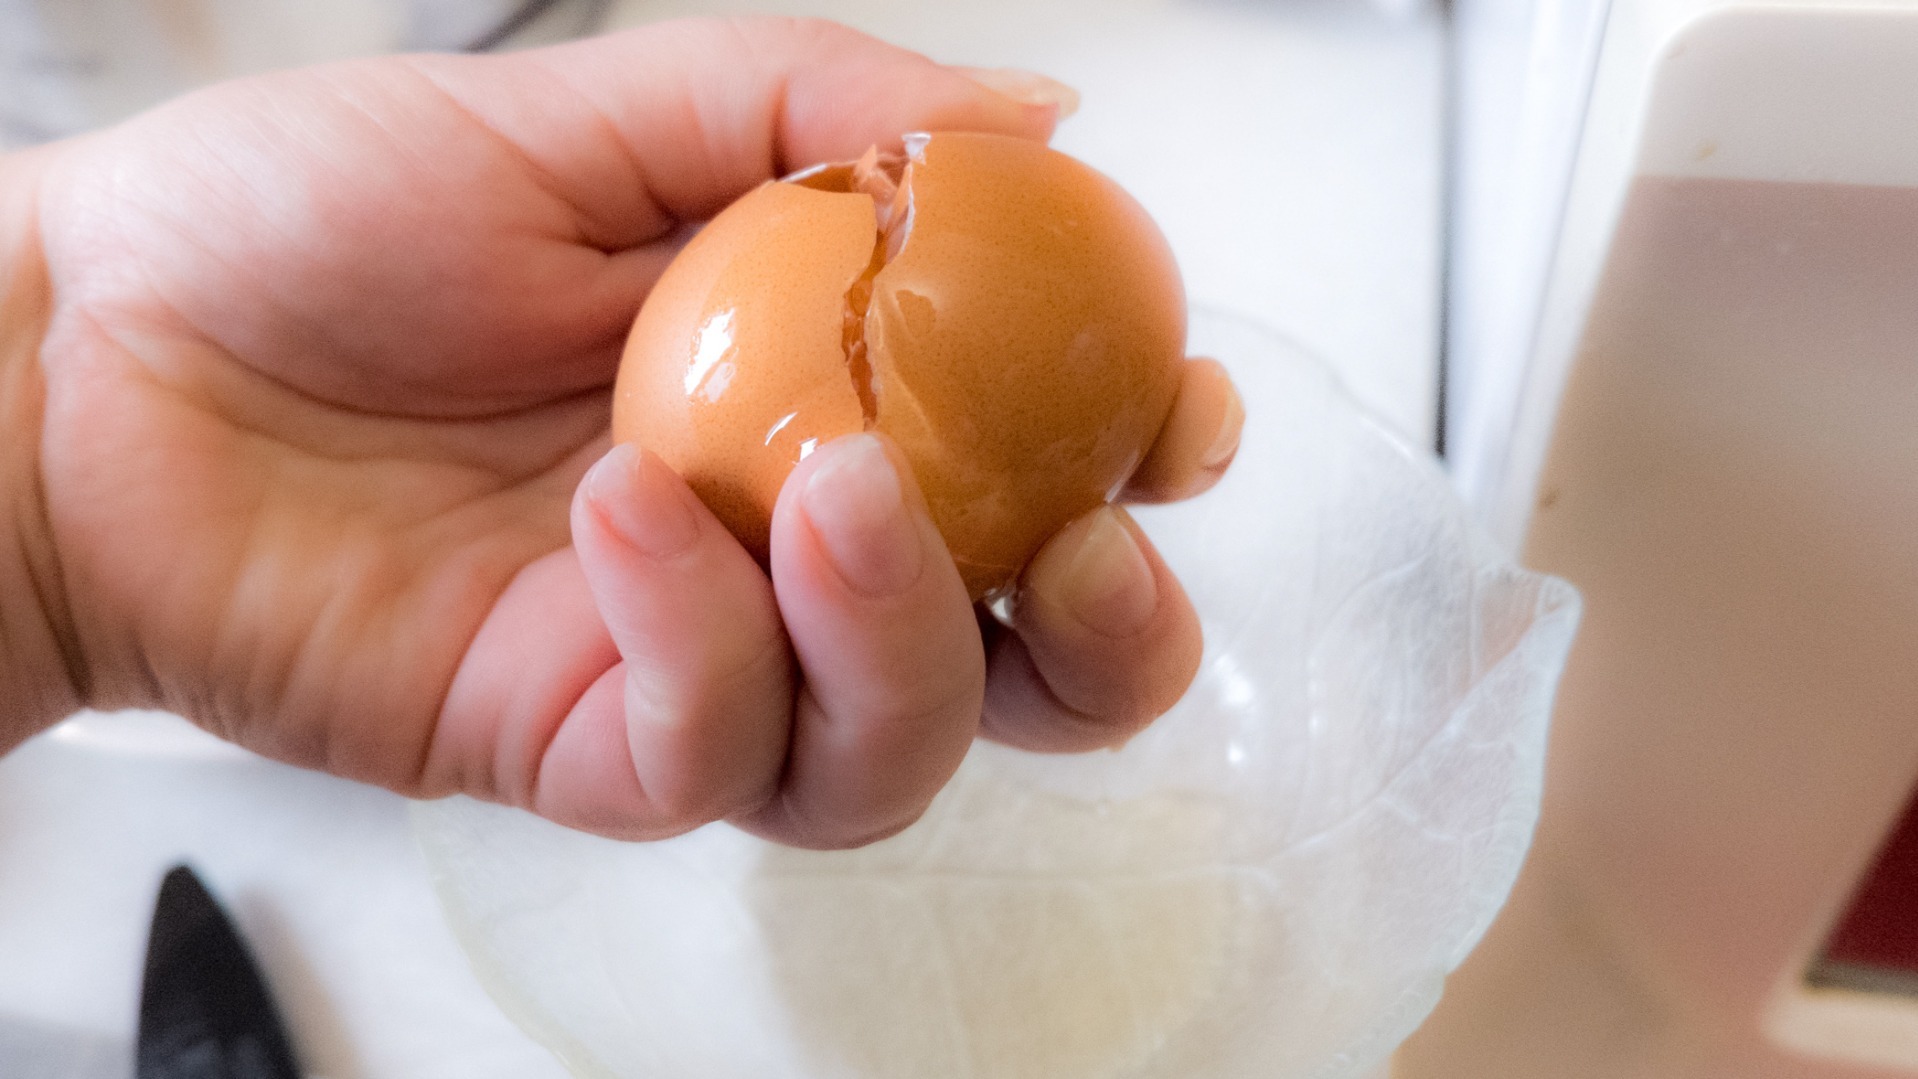 Яйца с пониженной полезностью обнаружил Россельхознадзор в Хабаровске